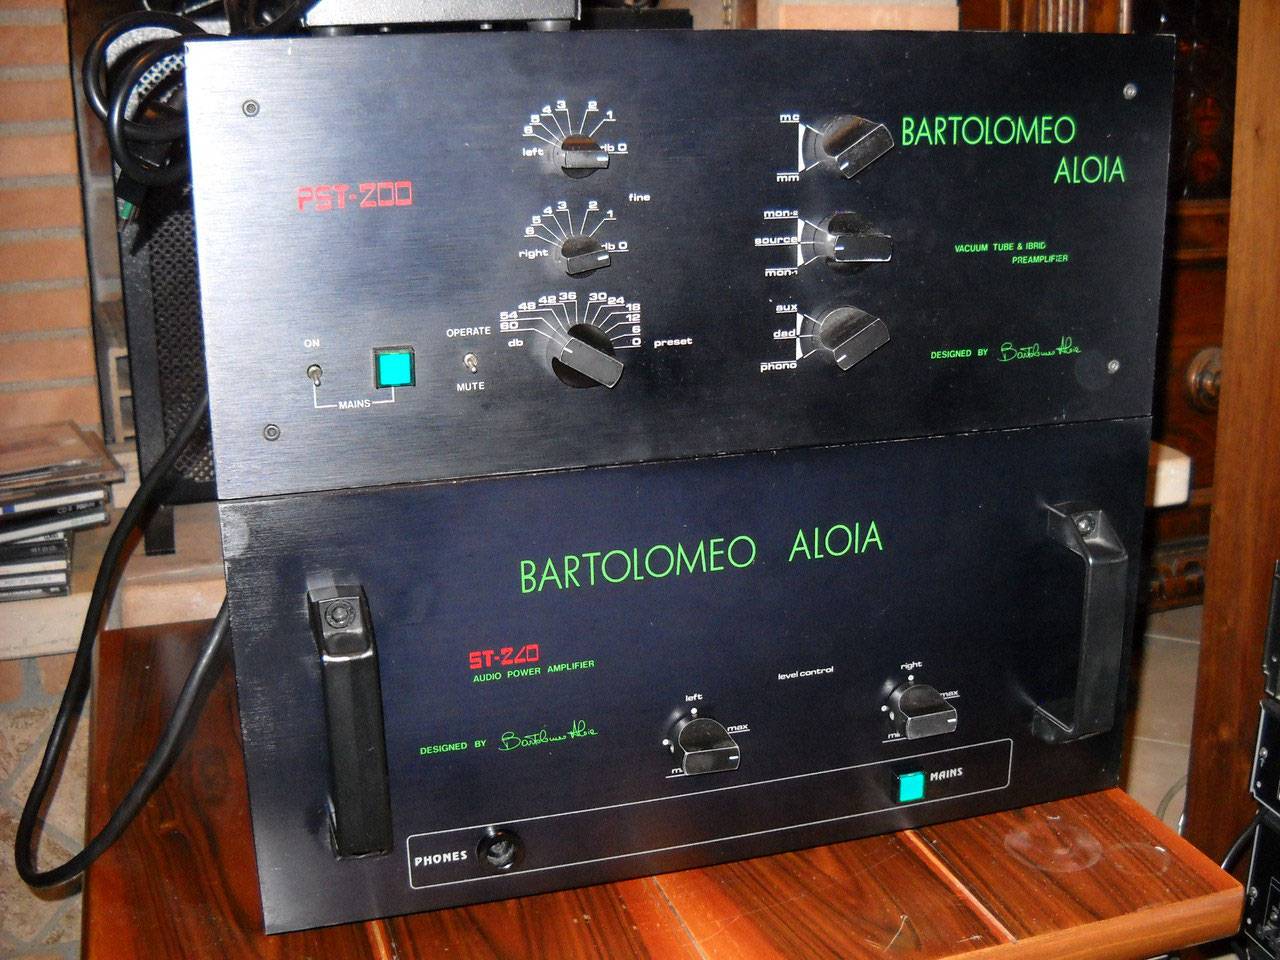 Bartolomeo Aloia PST-200